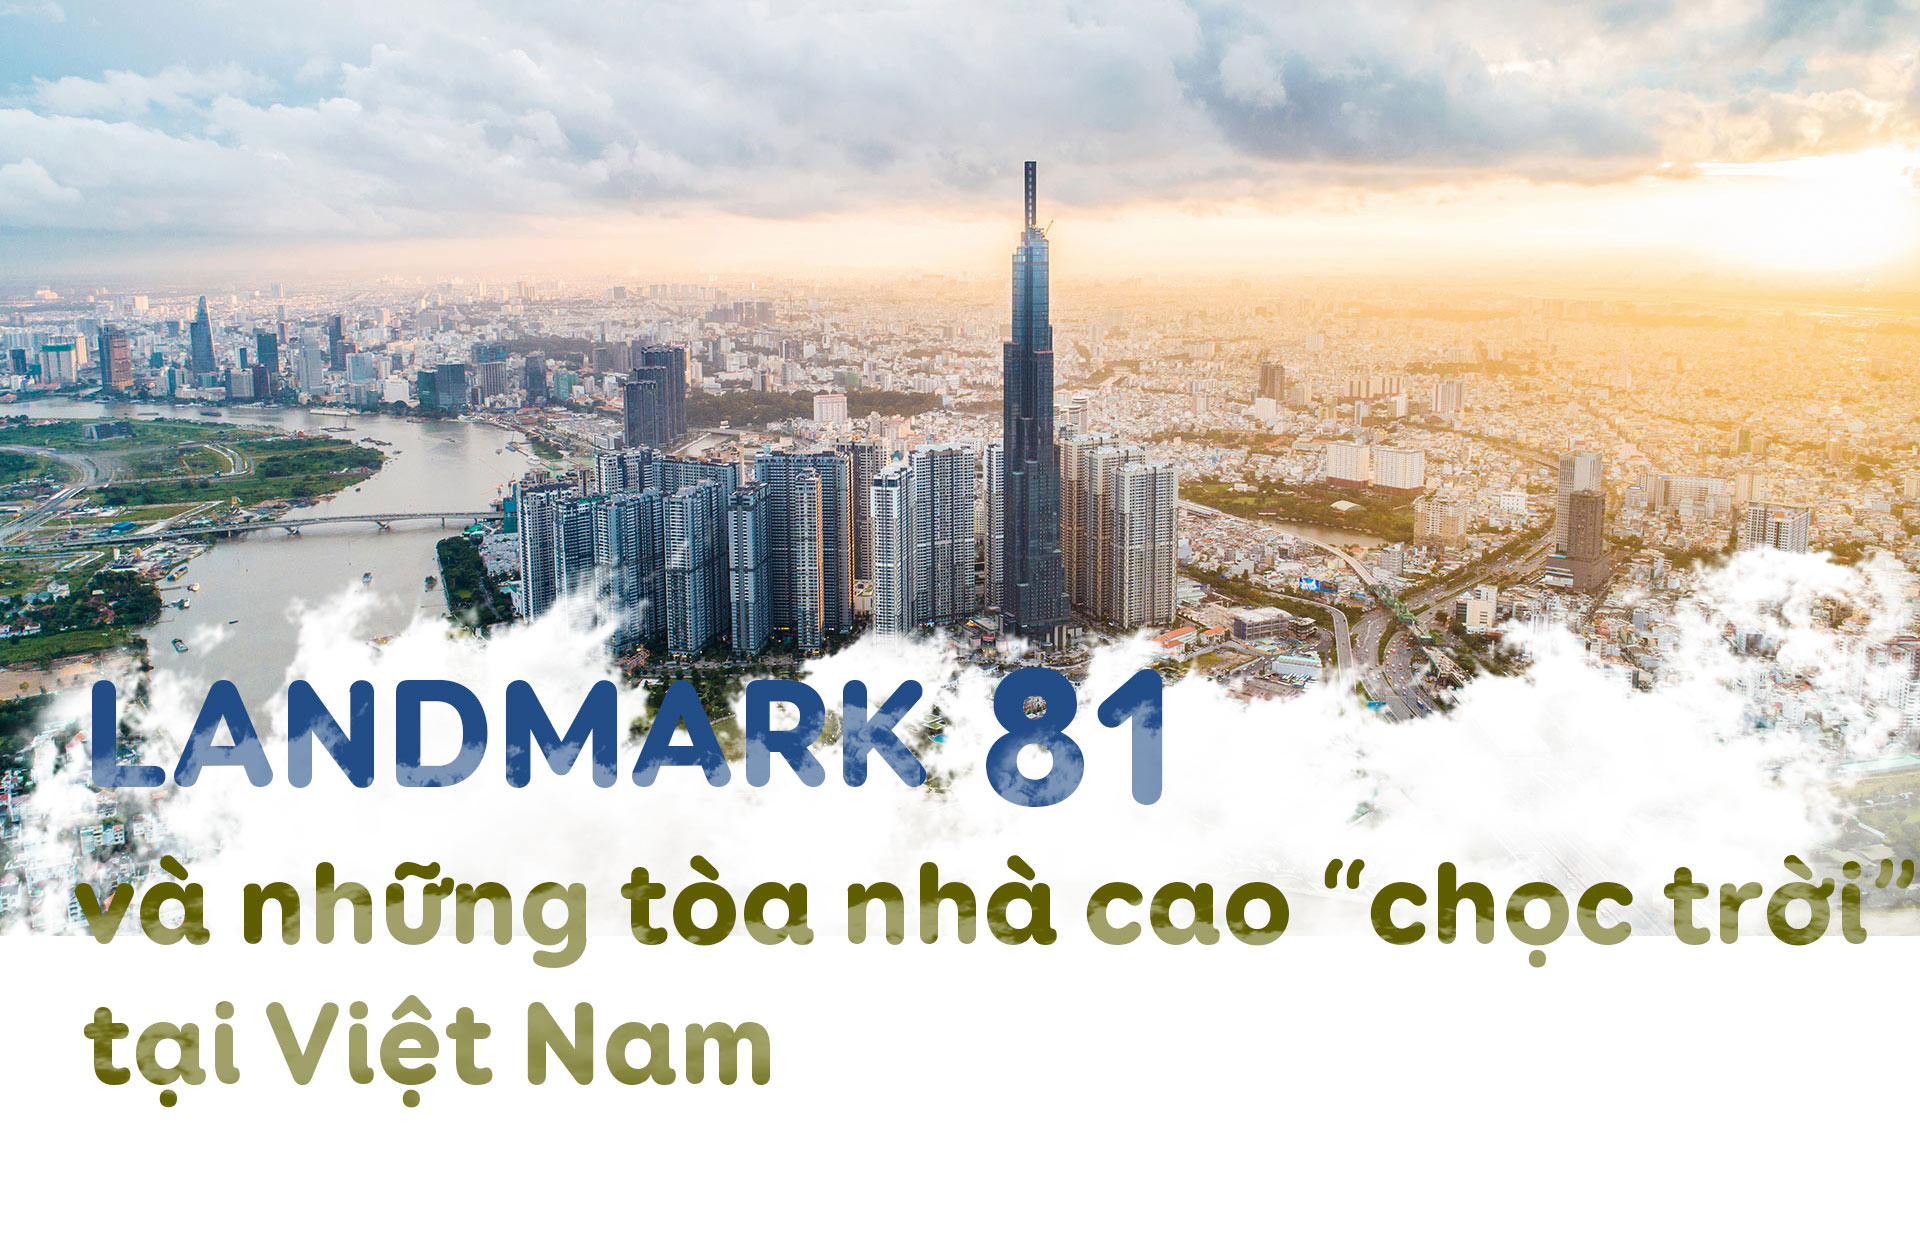 [Magazine] Landmark 81 và những tòa nhà cao “chọc trời” tại Việt Nam - 1